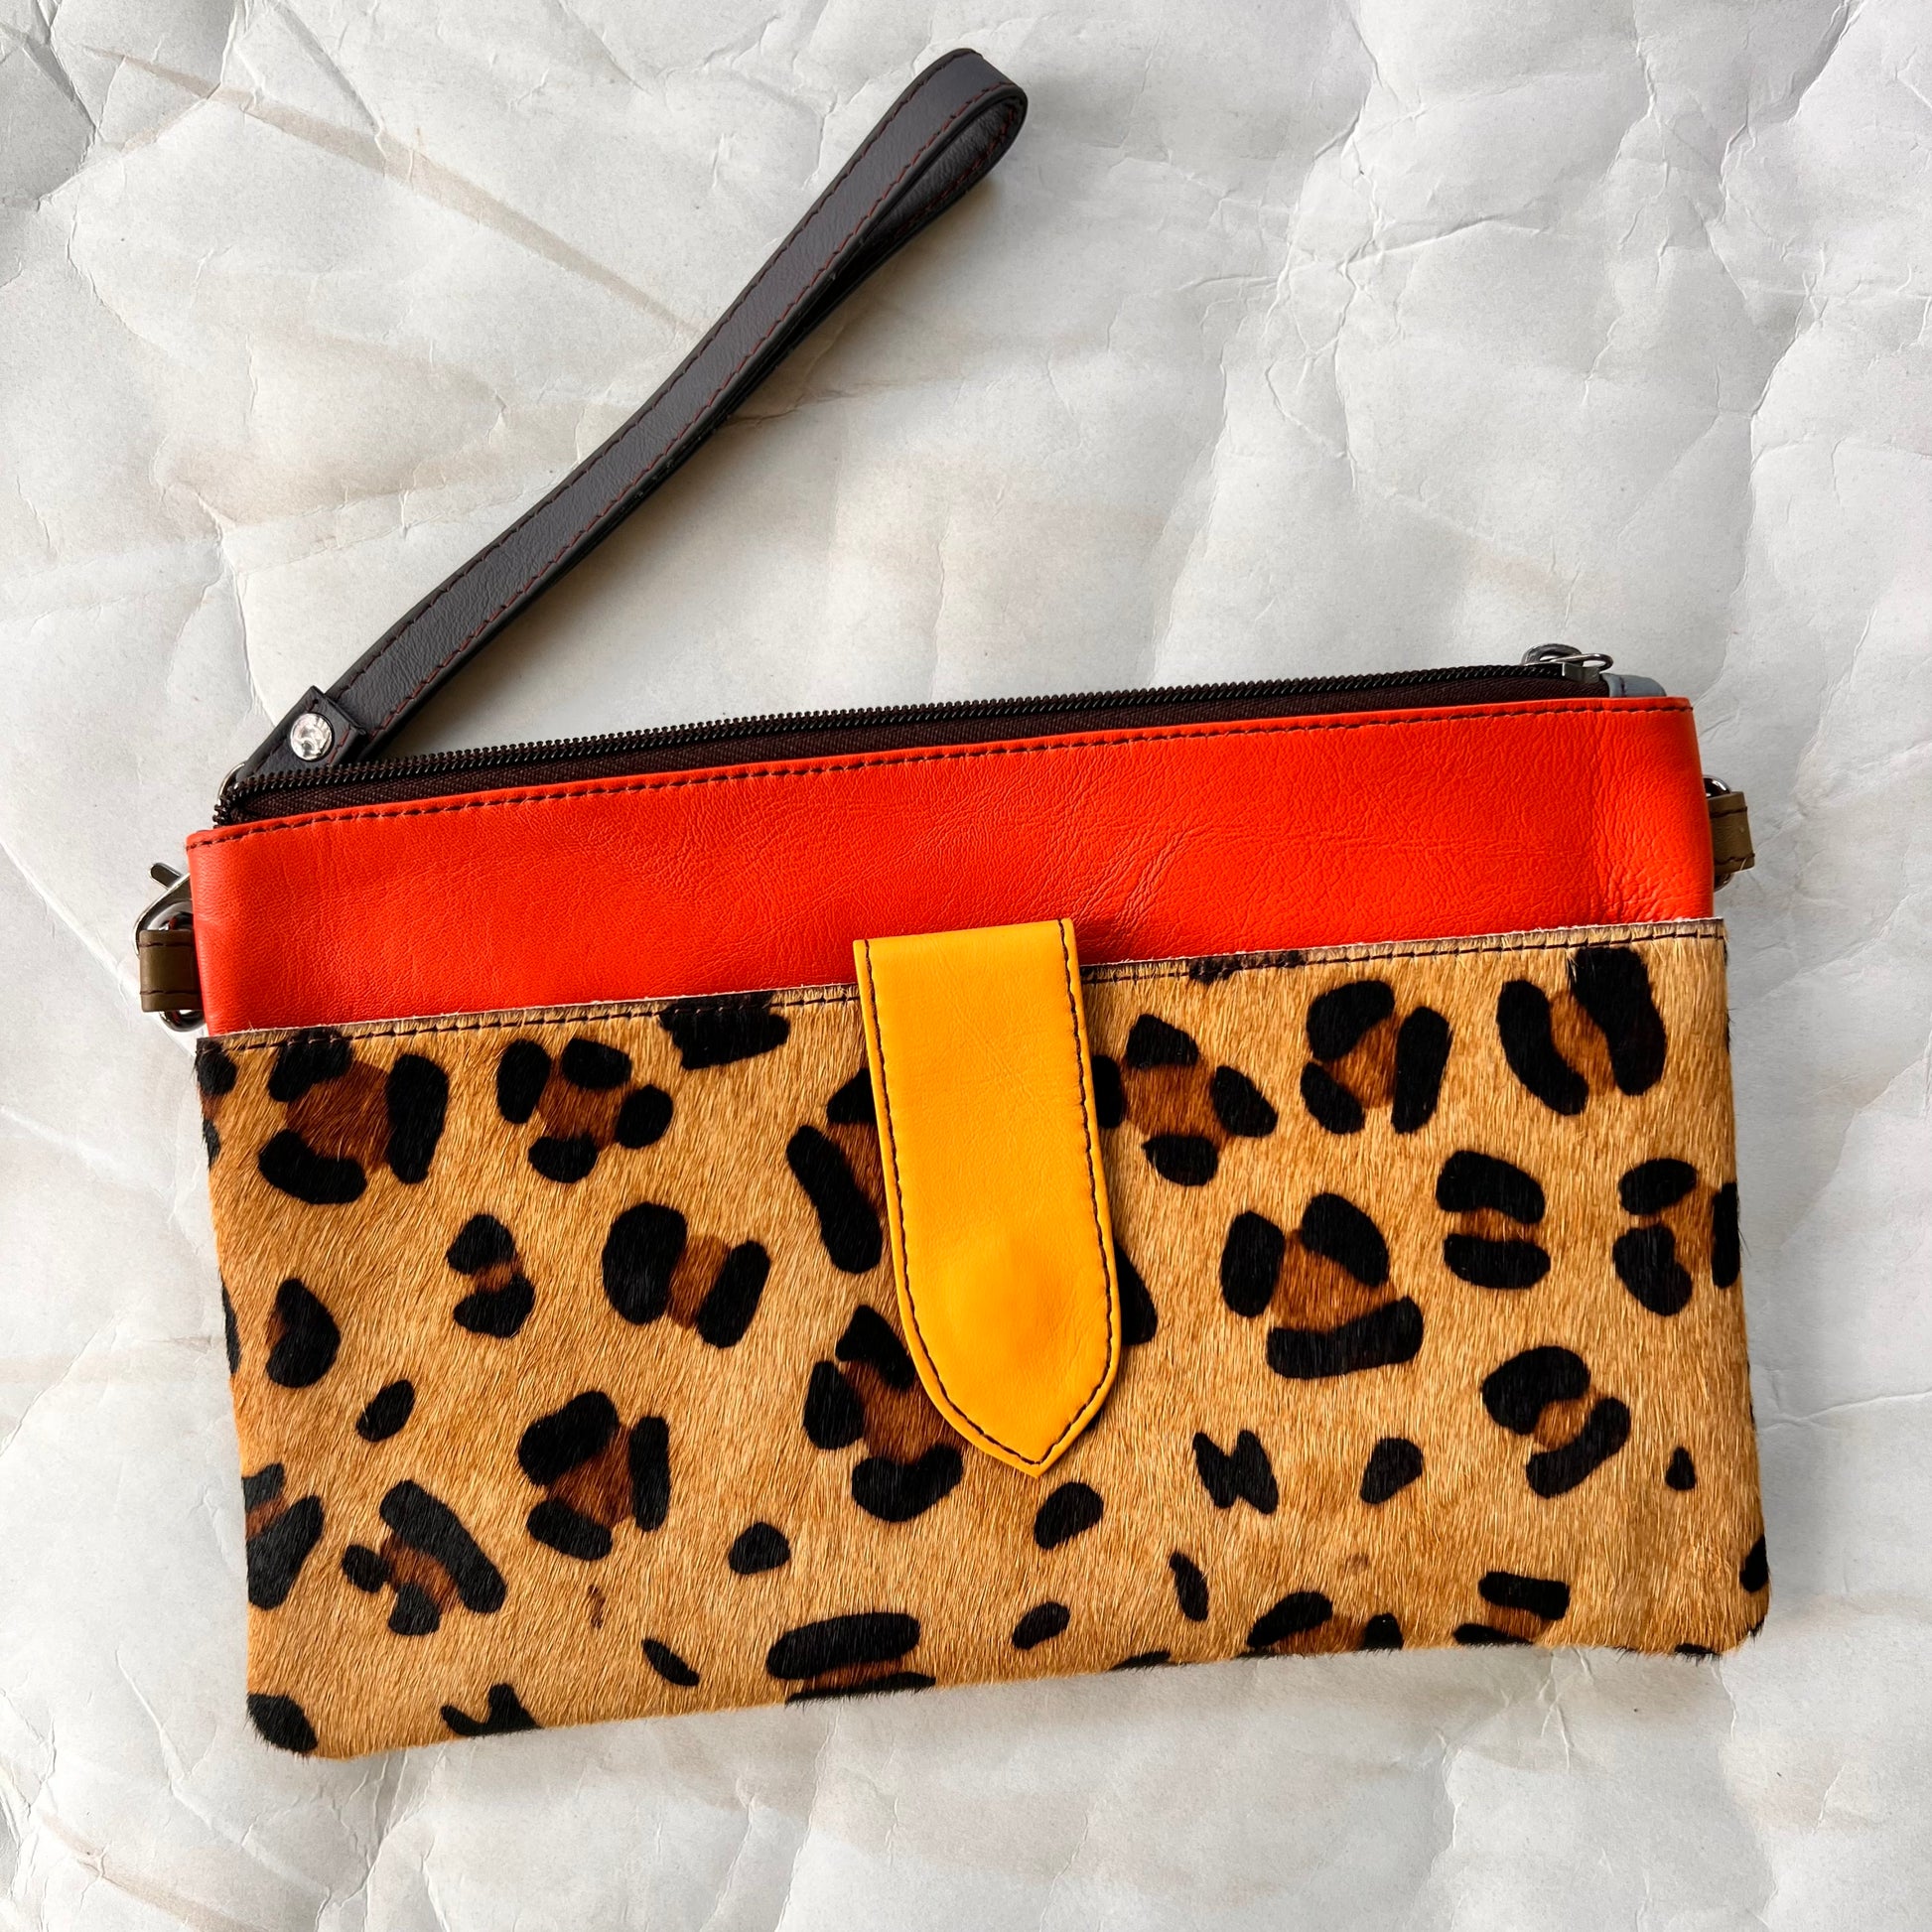 orange rectangular bag with cheetah print pocket, grey wristlet strap.